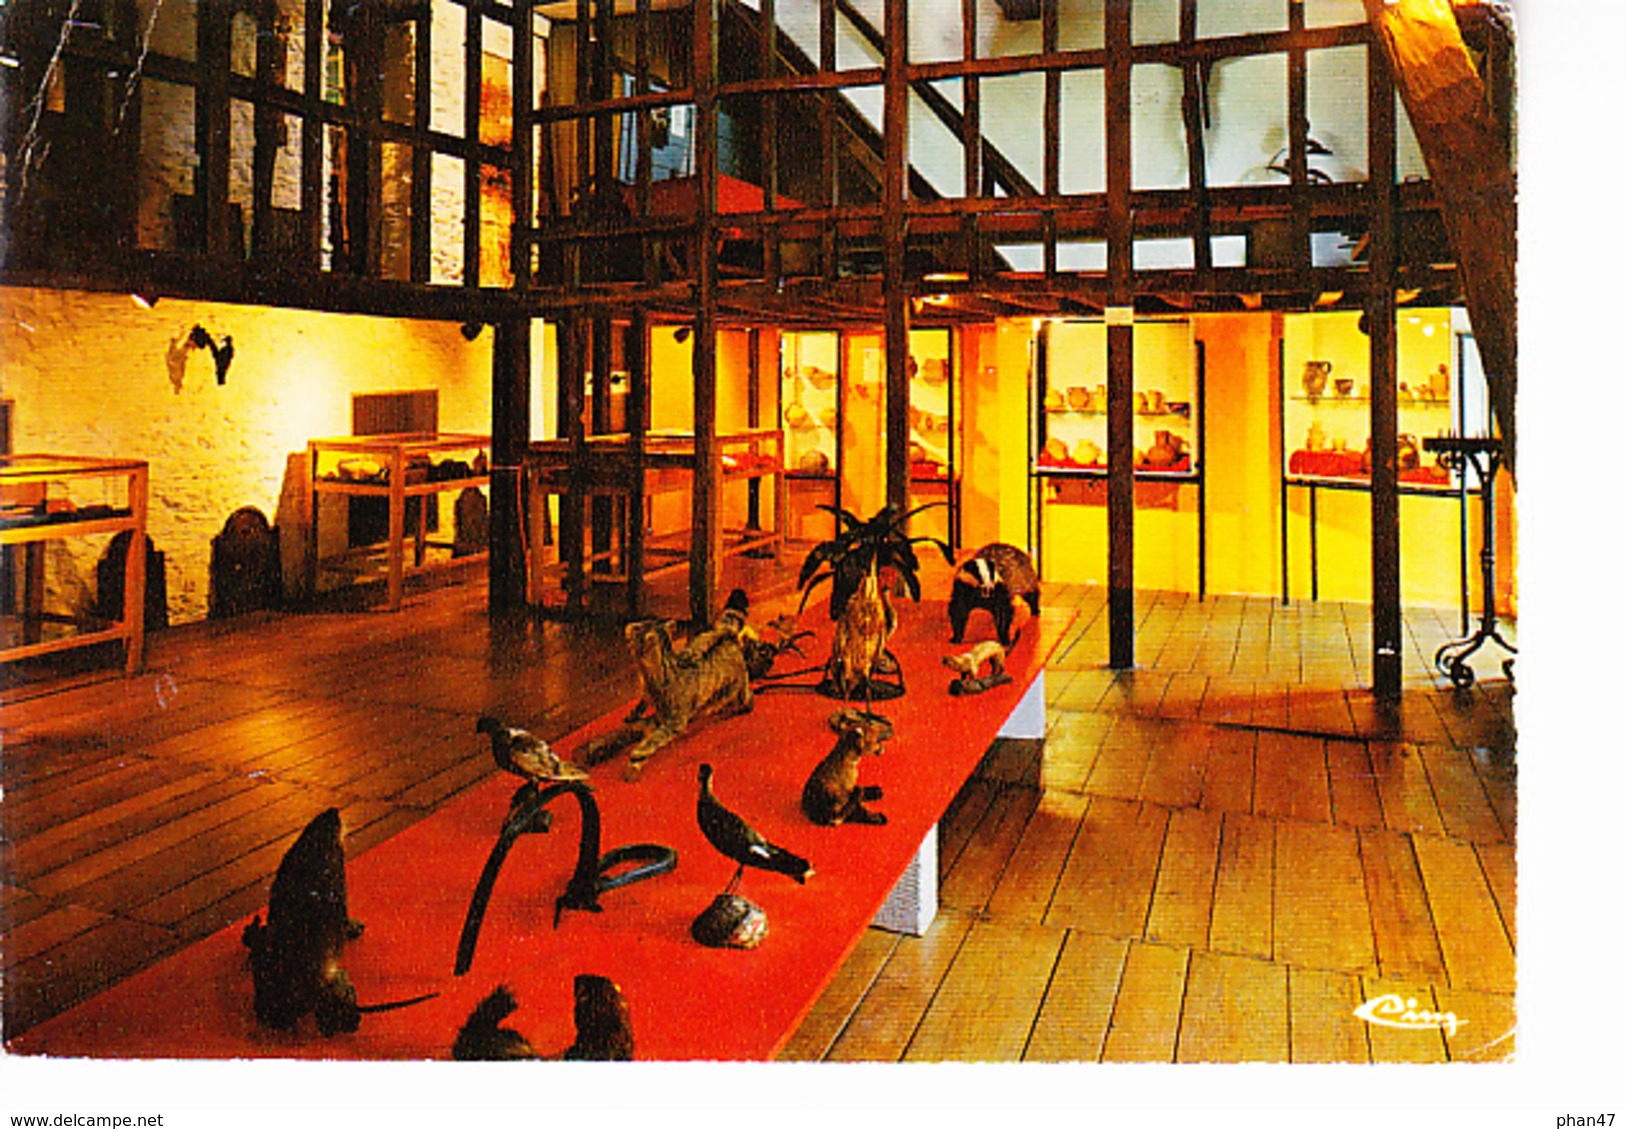 FOURNEAU-SAINT-MICHEL (Belgique) Musée Provincial, Salle Des Expositions, Animaux Empaillés, Ed. CIM Combier 1970 Enviro - Saint-Hubert